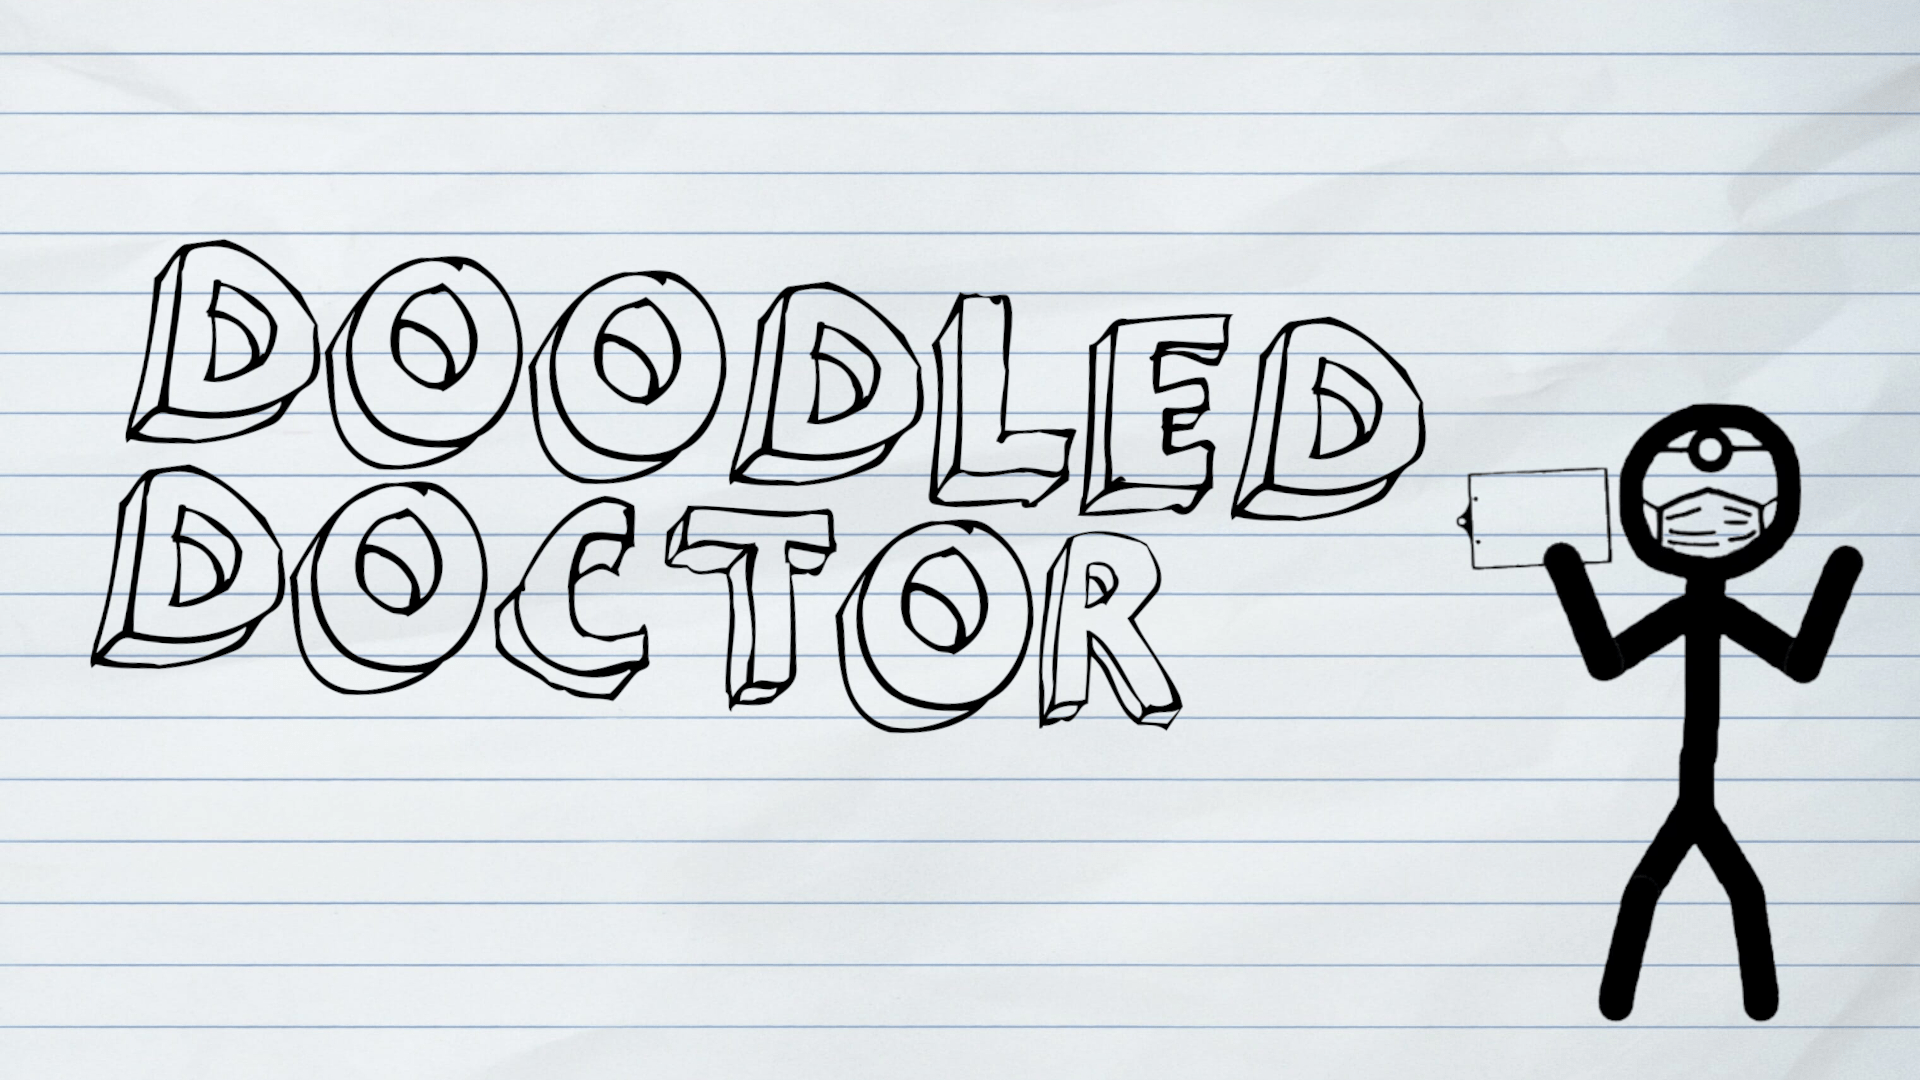 Doodled Doctor